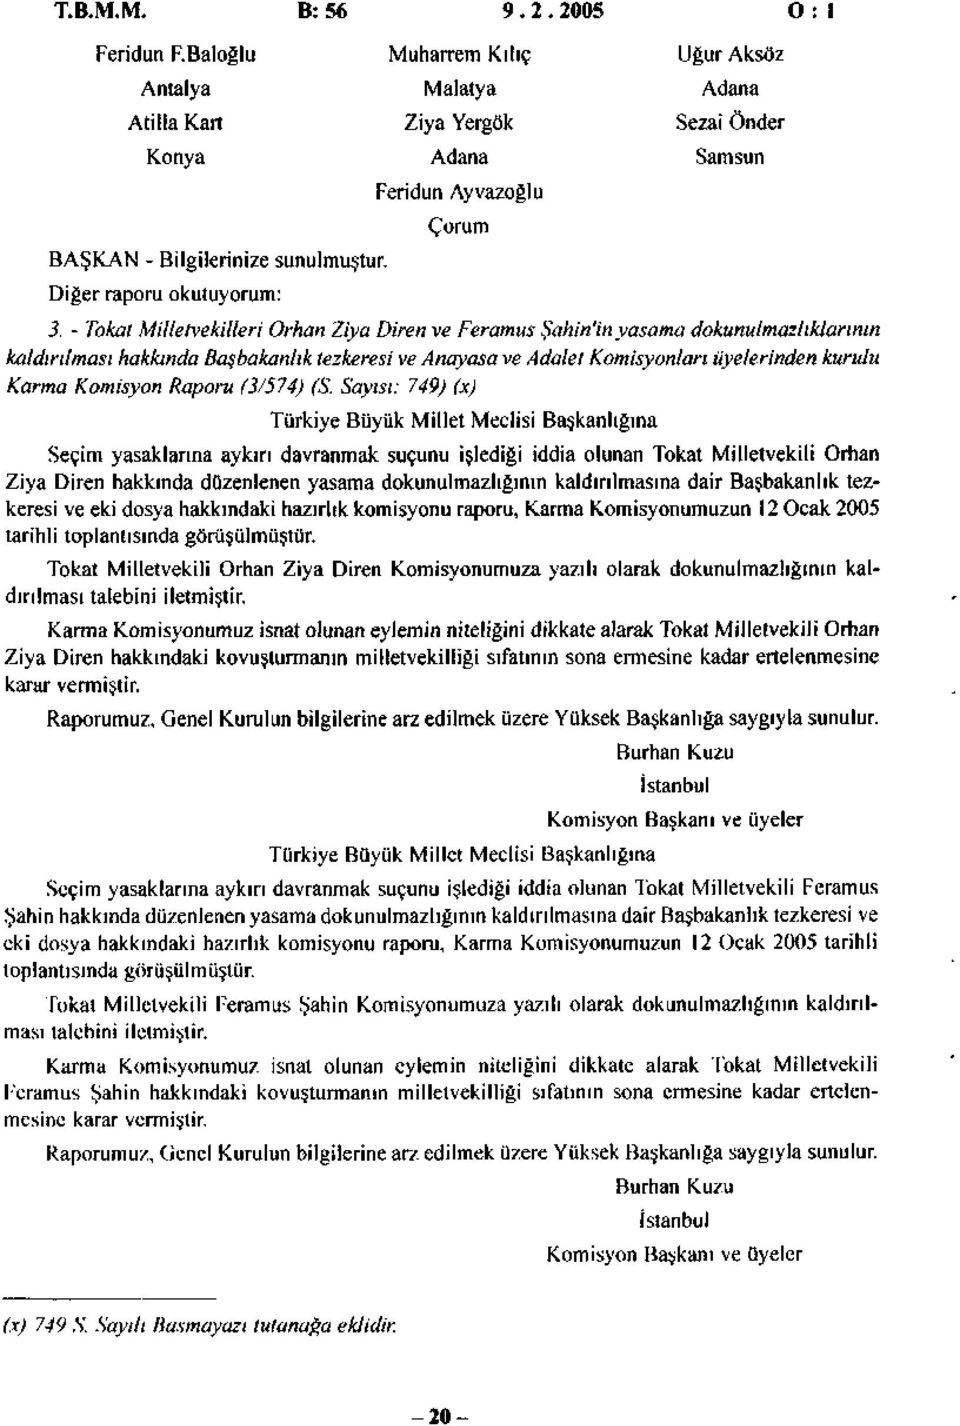 - Tokat Milletvekilleri Orhan Ziya Diren ve Feramus Şahin'inyasama dokunulmazlıklarının kaldırılması hakkında Başbakanlık tezkeresi ve Anayasa ve Adalet Komisyonları üyelerinden kurulu Karma Komisyon